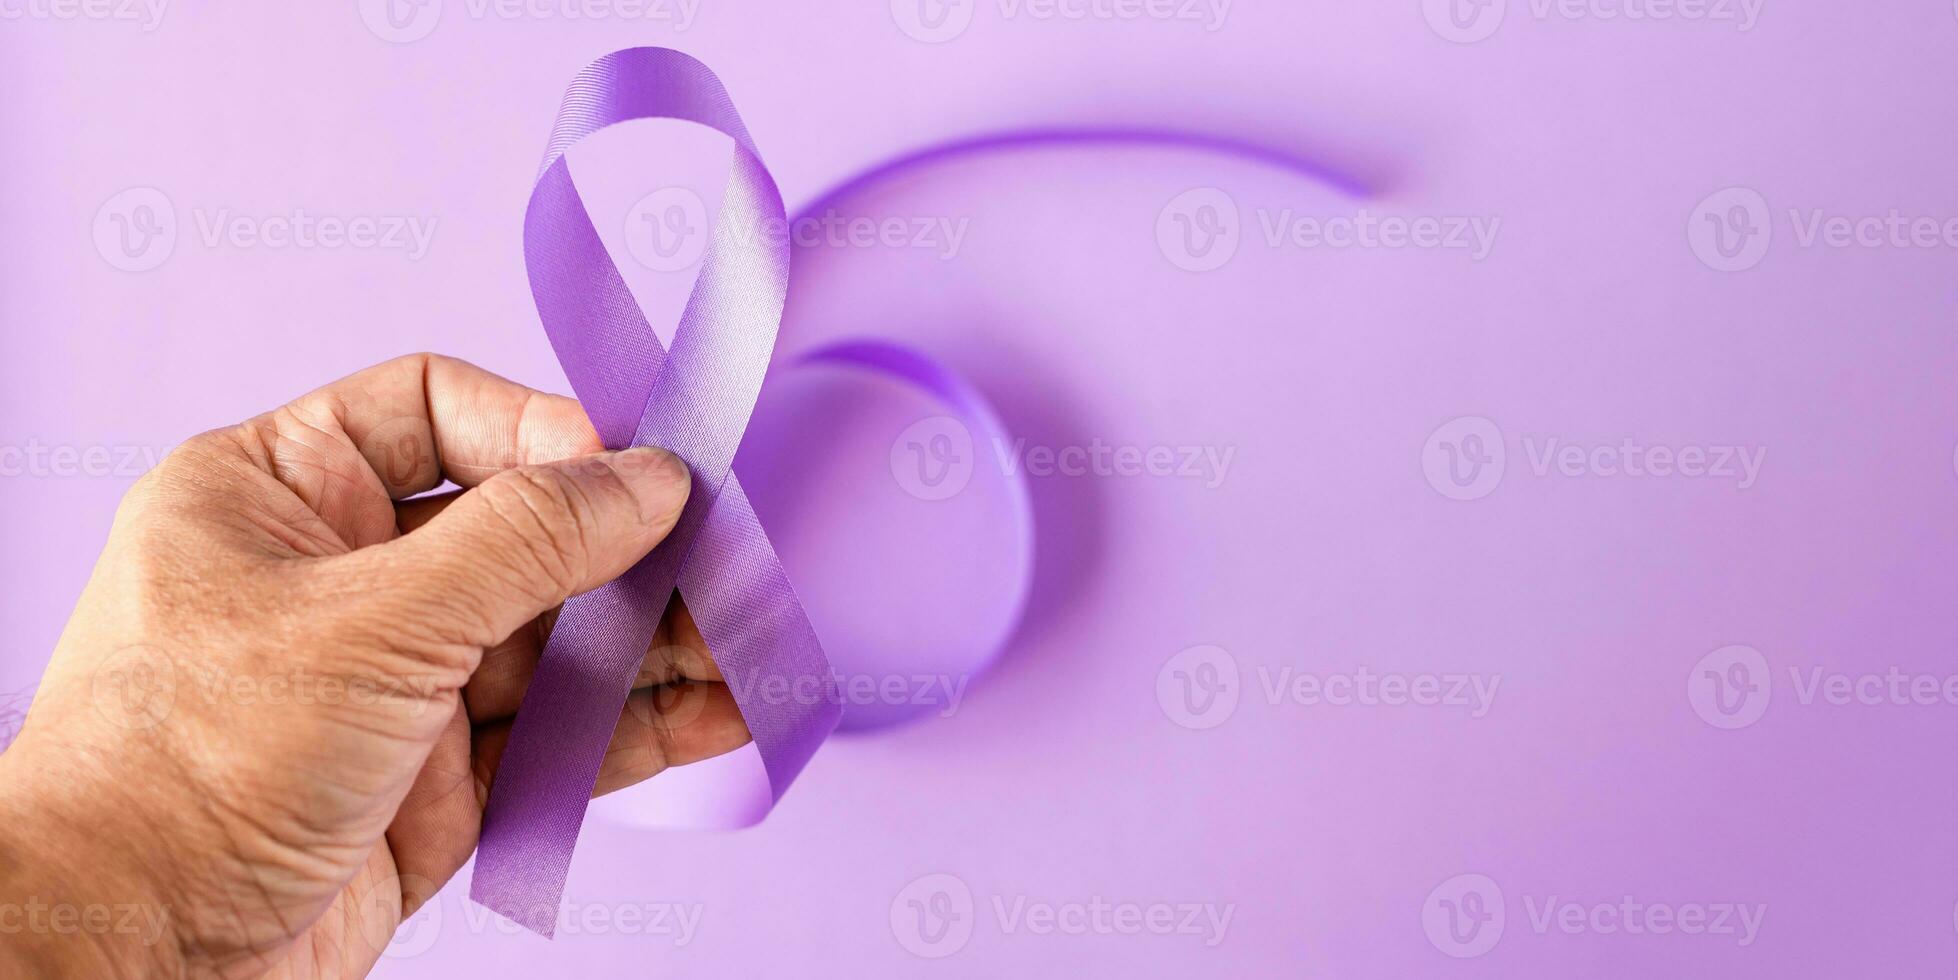 International Überdosis Bewusstsein Tag. Hand hält lila Band auf das lila Hintergrund foto